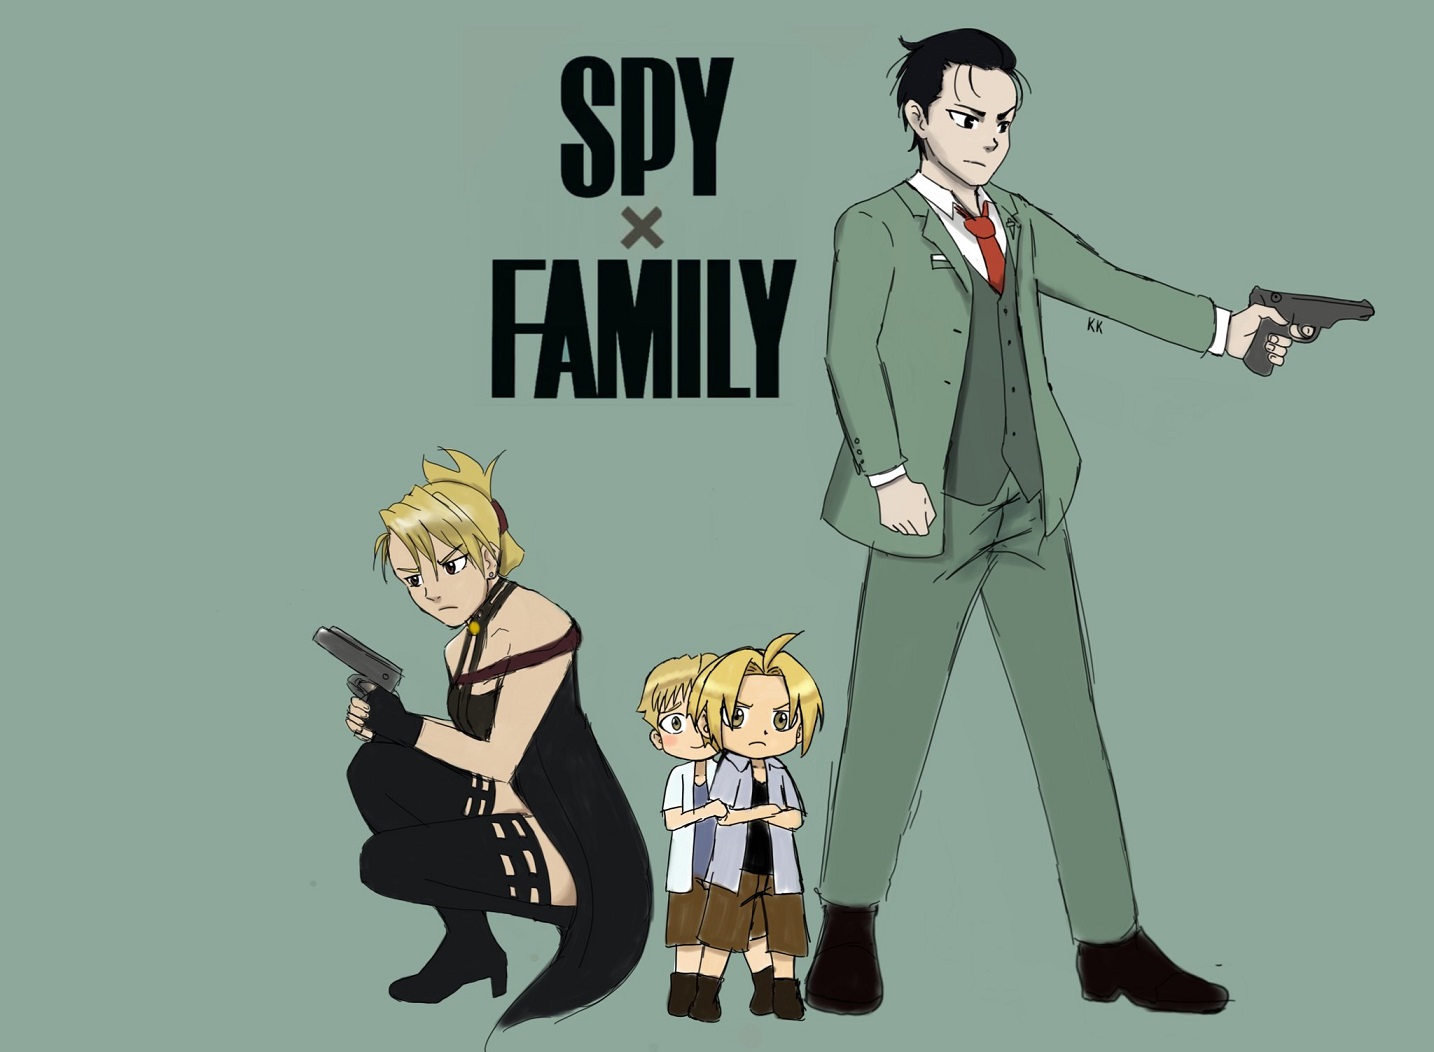 Artista imaginou como seria um crossover entre Spy x Family e Fullmetal Alchemist